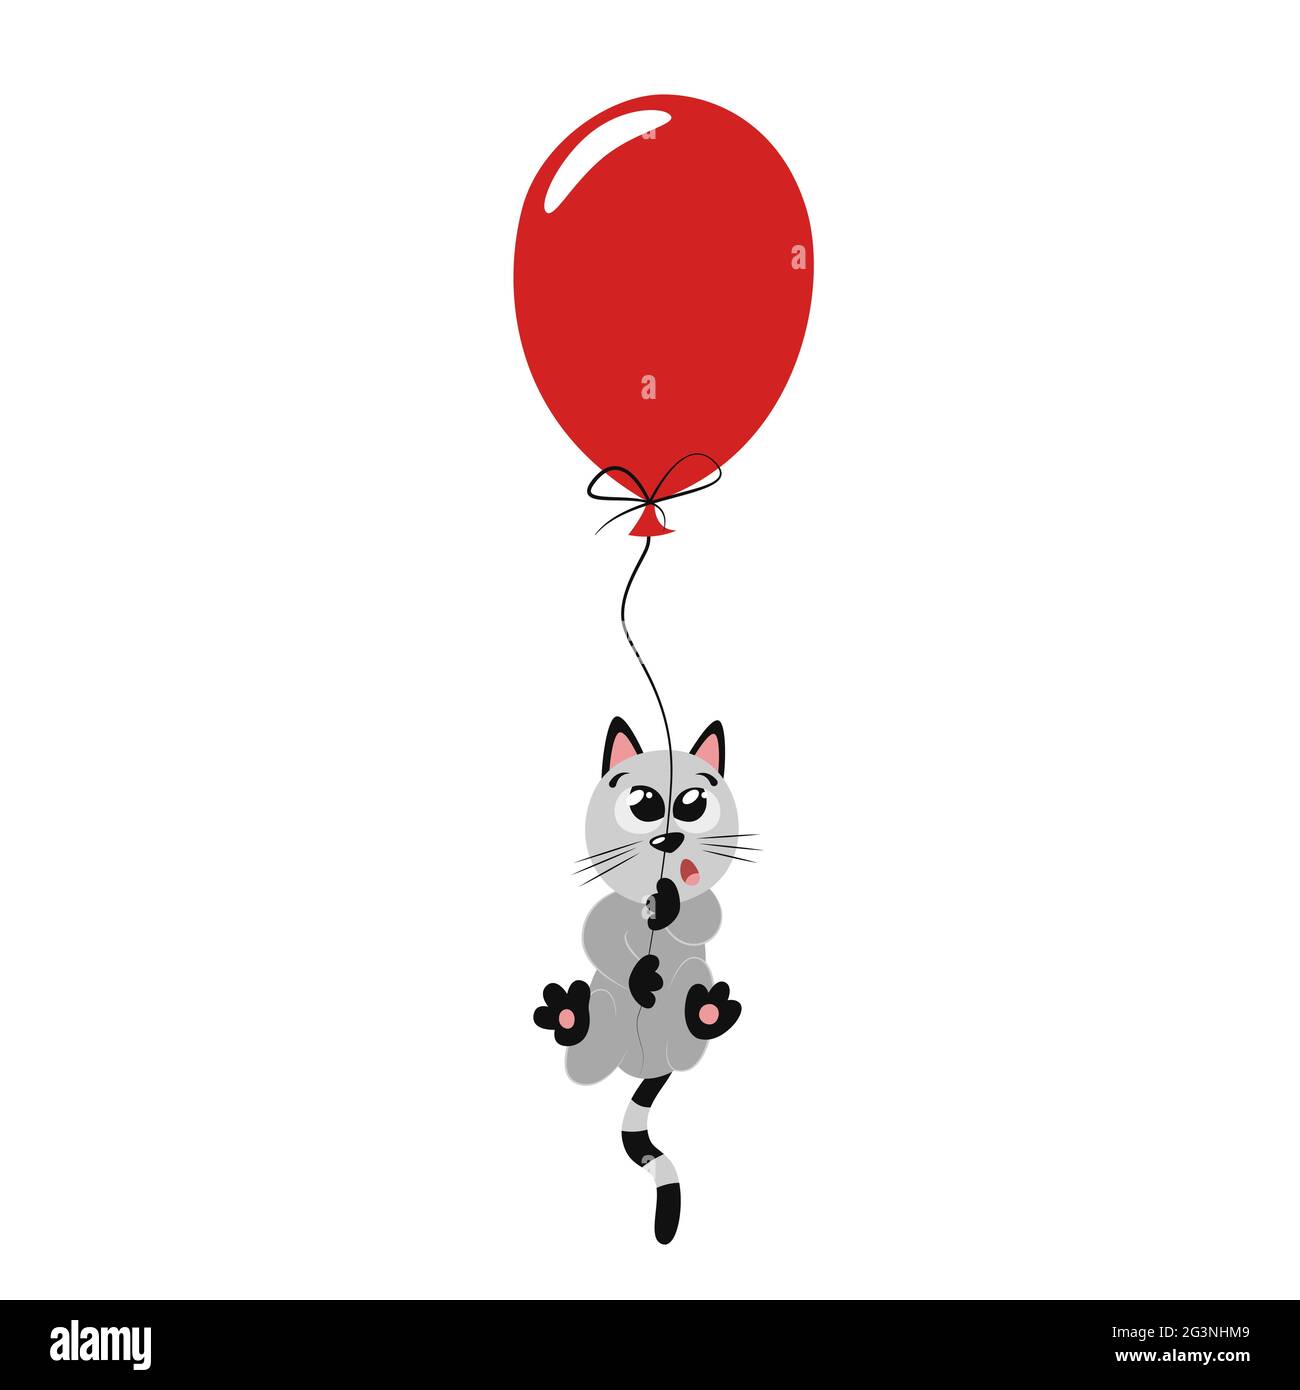 Niedliche lustige graue Kätzchen fliegen auf einem roten Ballon. Schöne helle flache Illustration für Kinderzimmer-Dekor. Cooler Aufdruck für Kinder. Poster Design für Kinder Stock Vektor